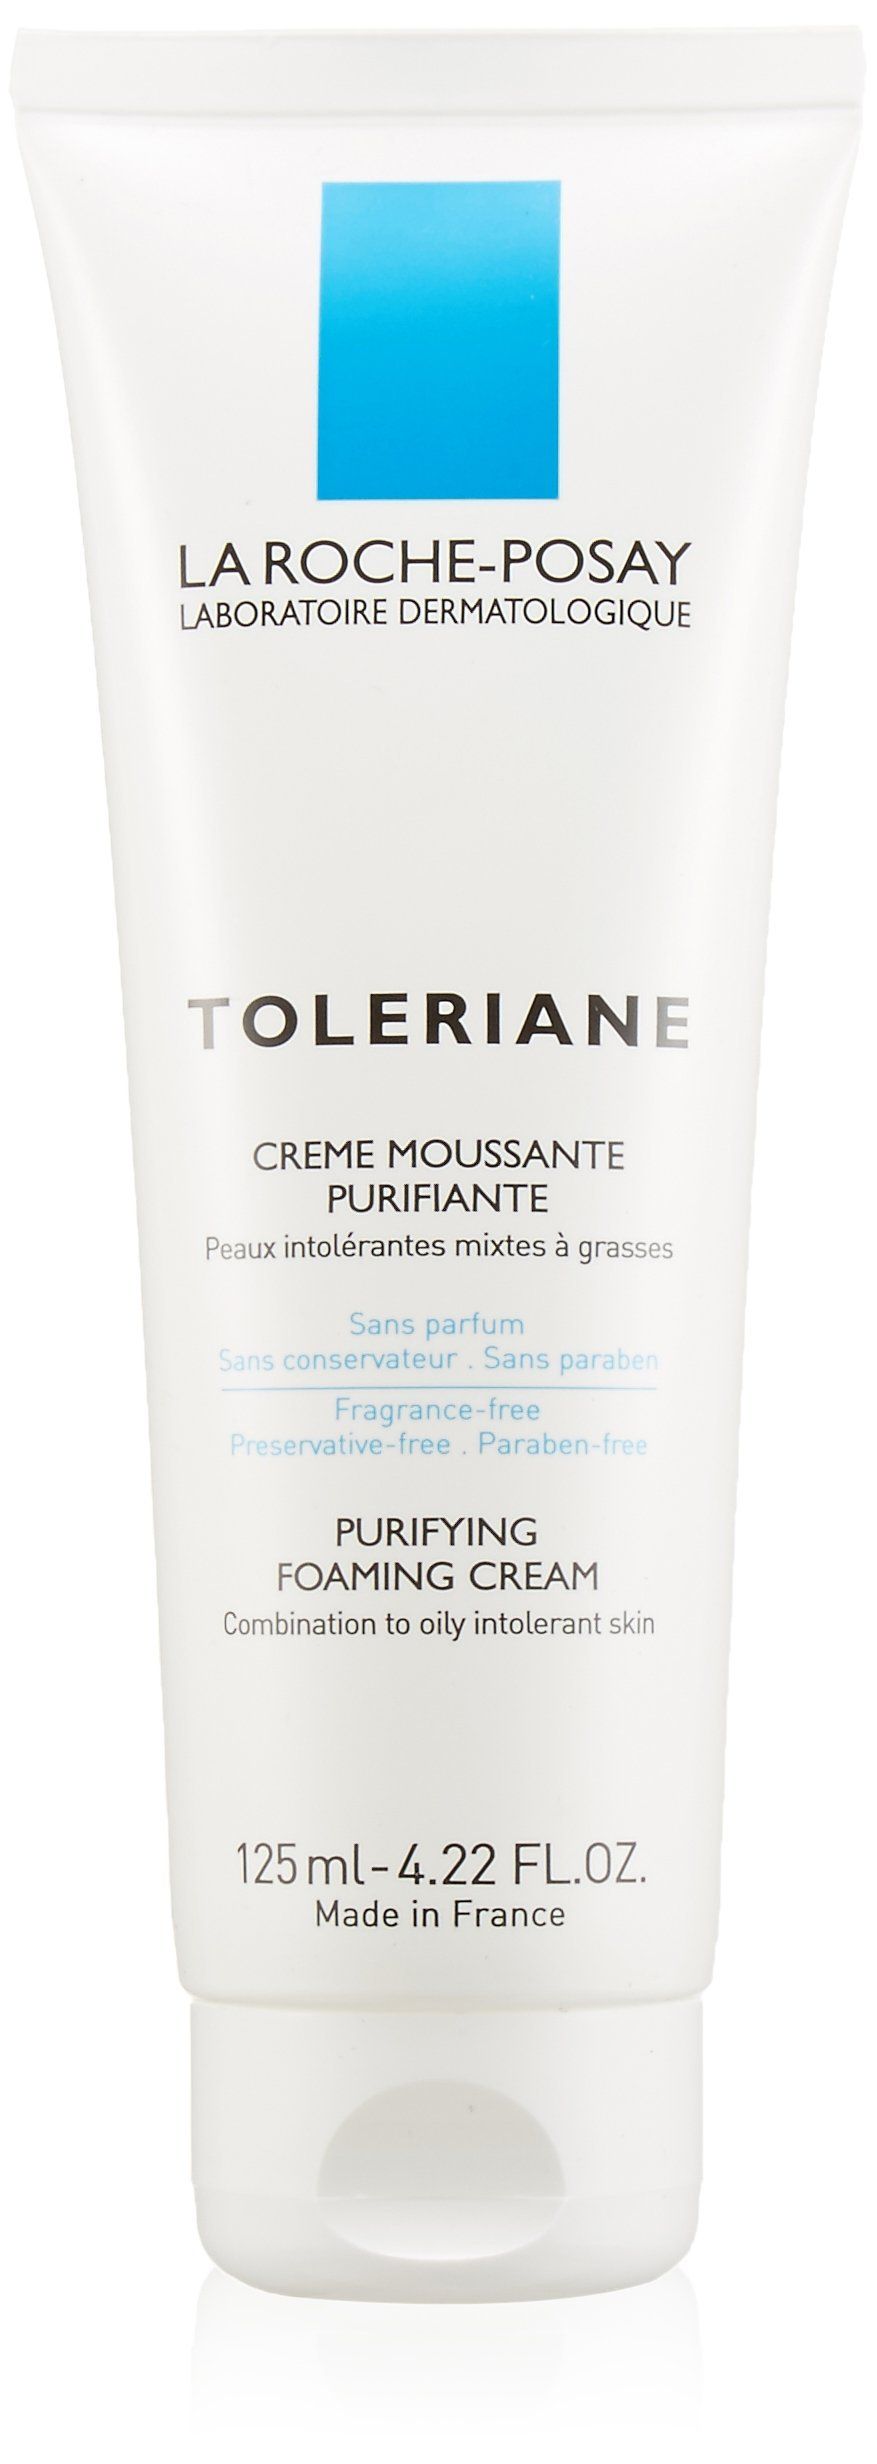 Toleriane facial cream